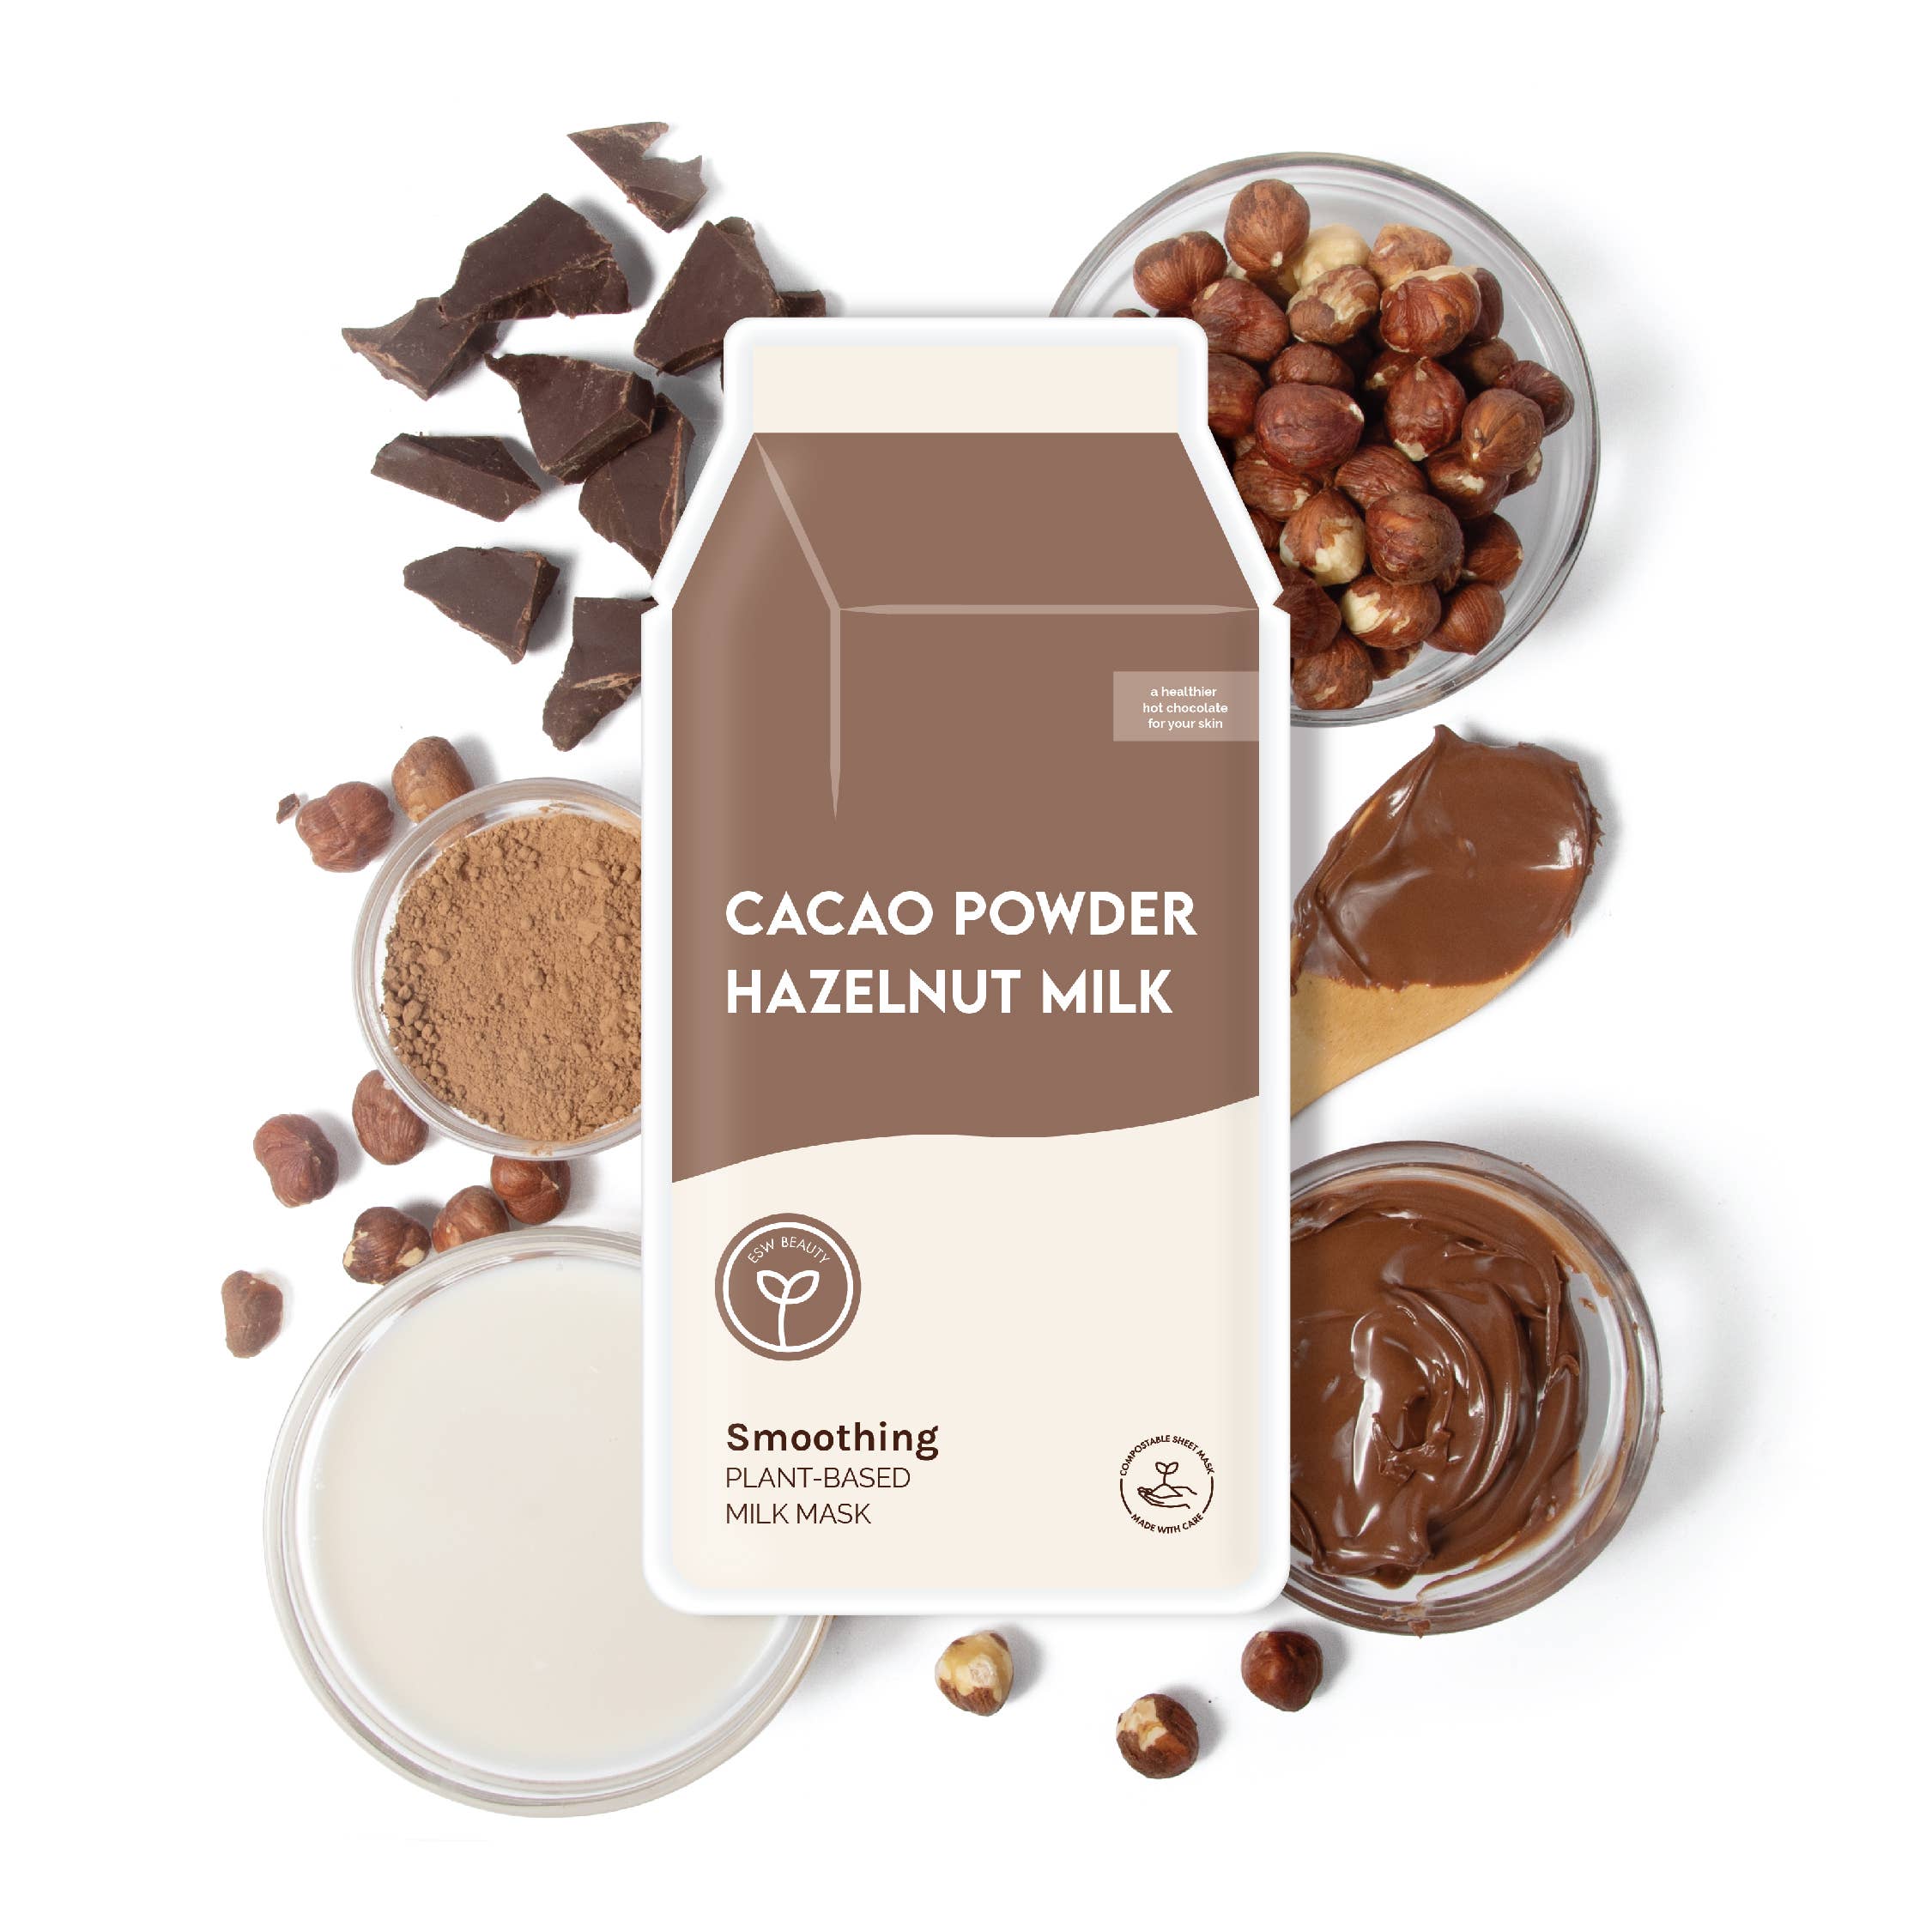 ESW Beauty - Cacao Powder Hazelnut Milk Smoothing Plant-Based Milk Mask: With Peg Hole